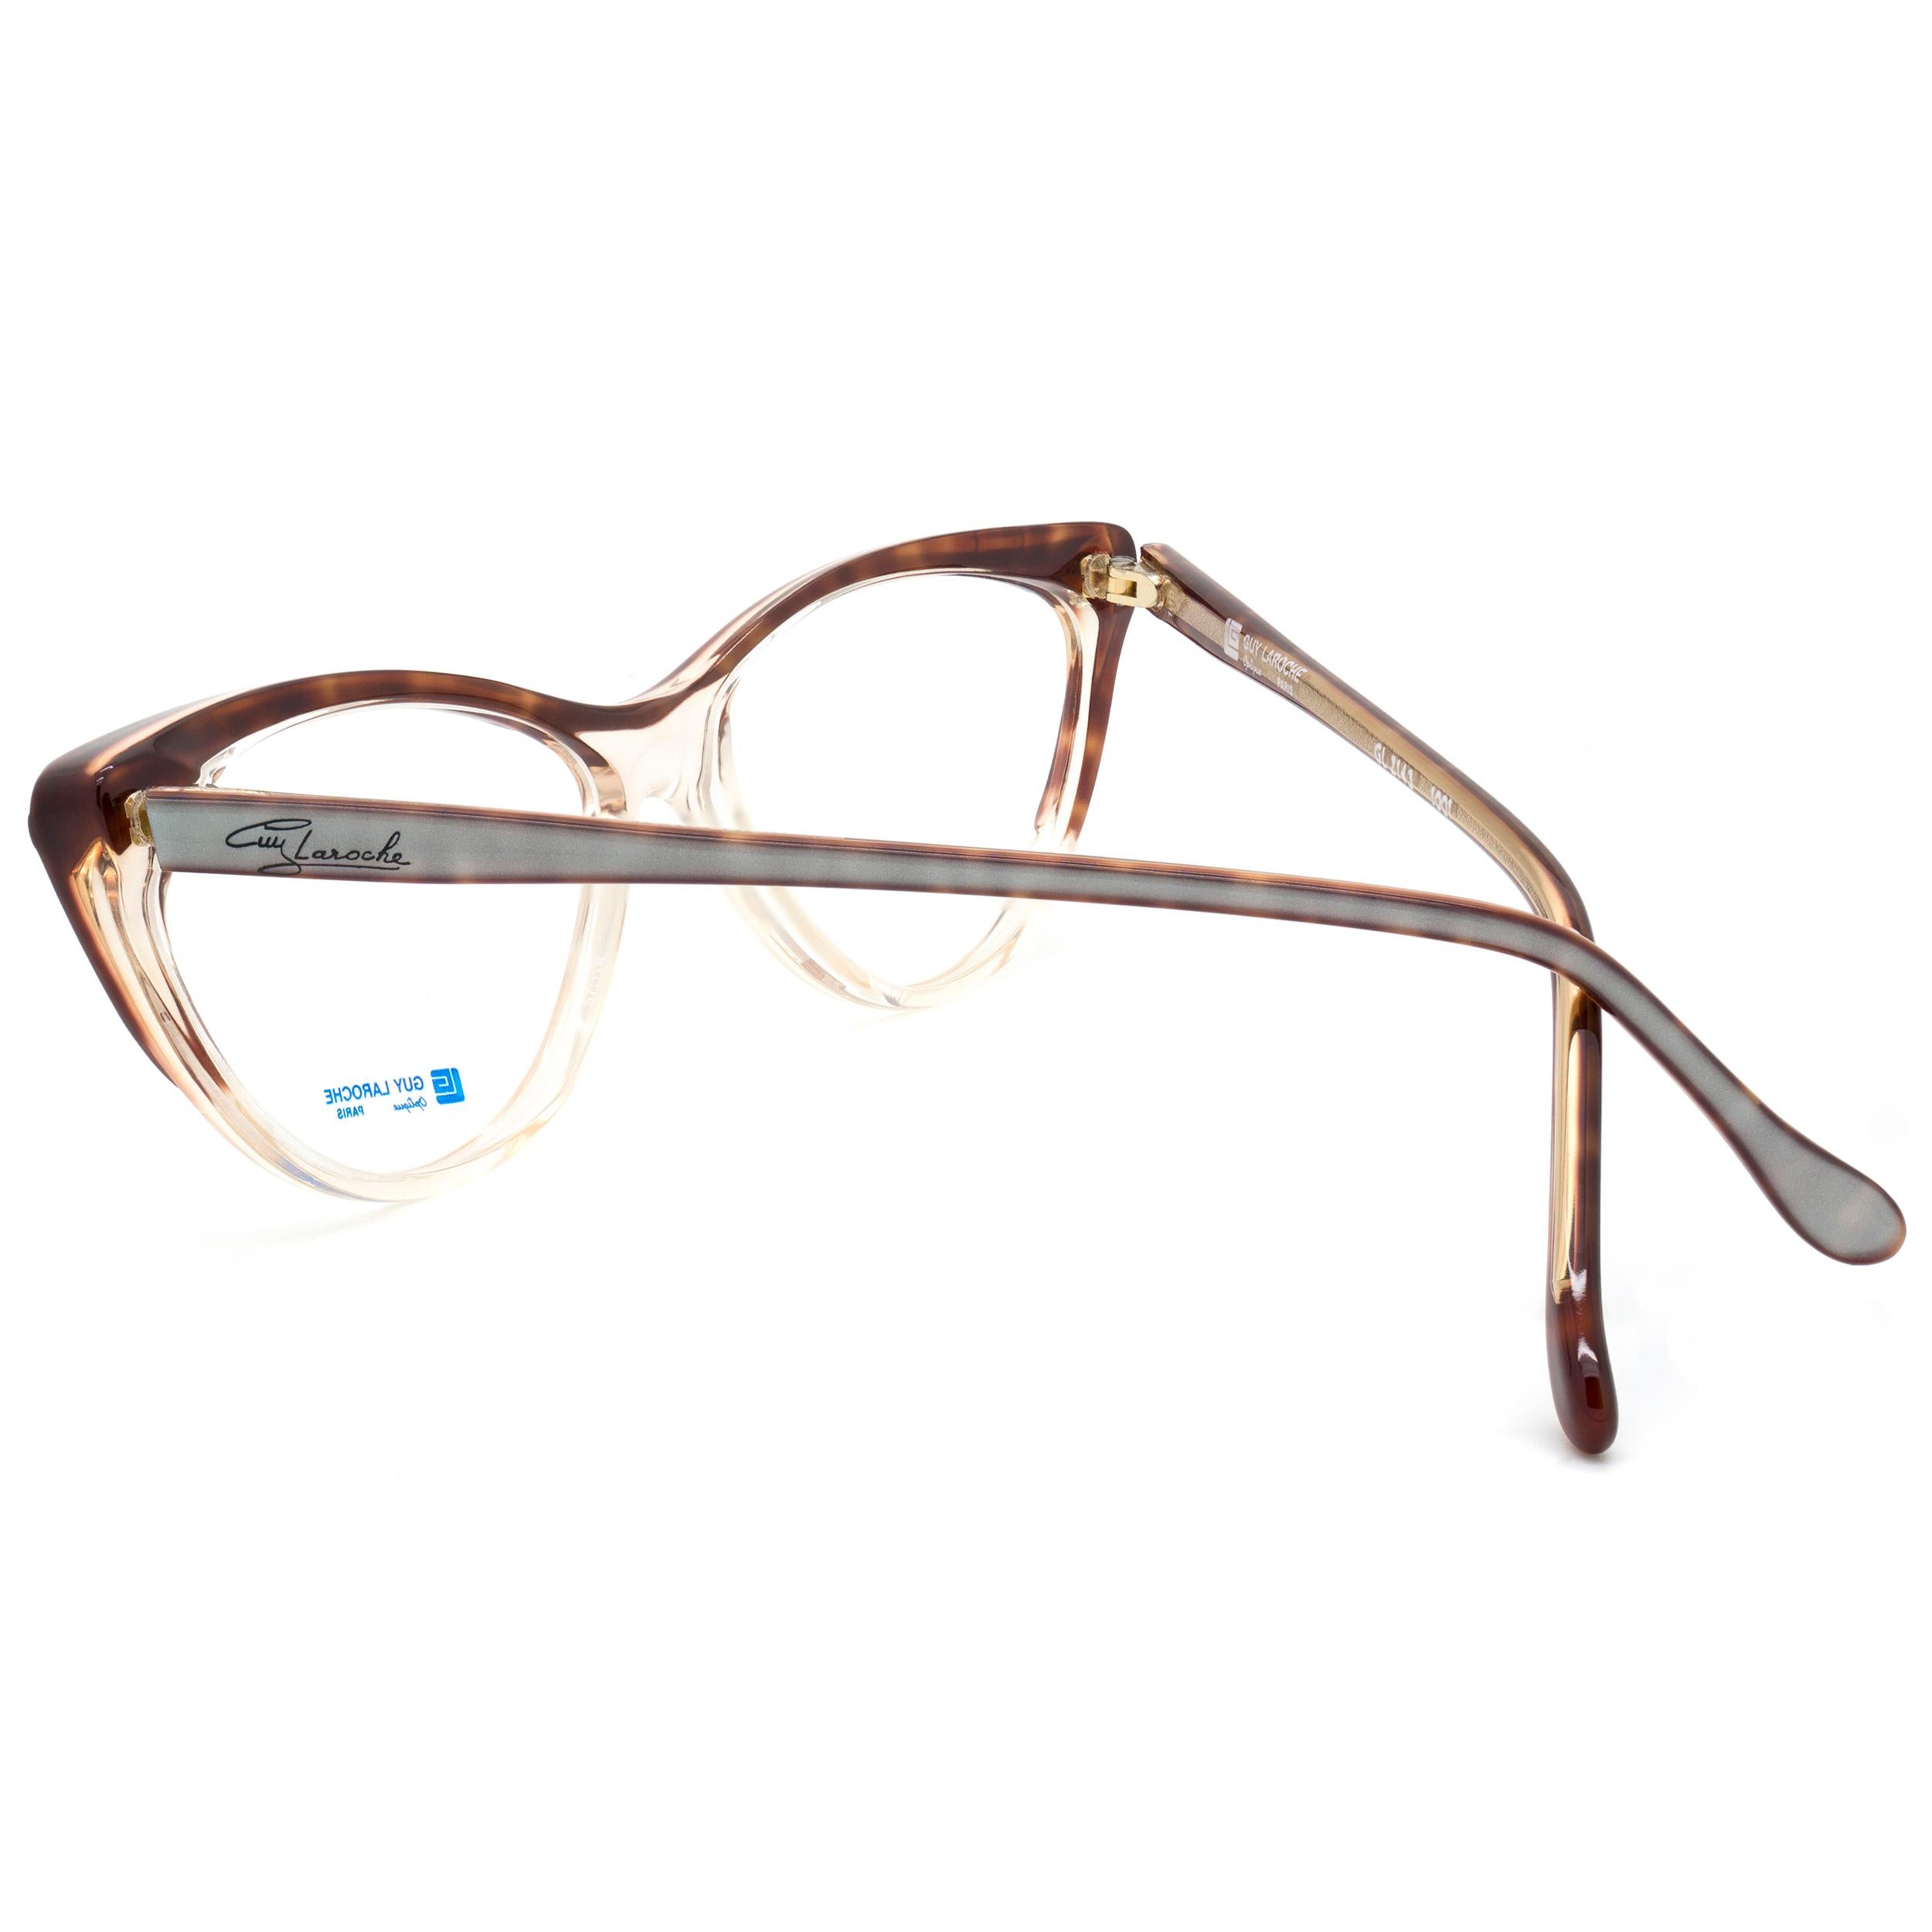 70s glasses frames women's